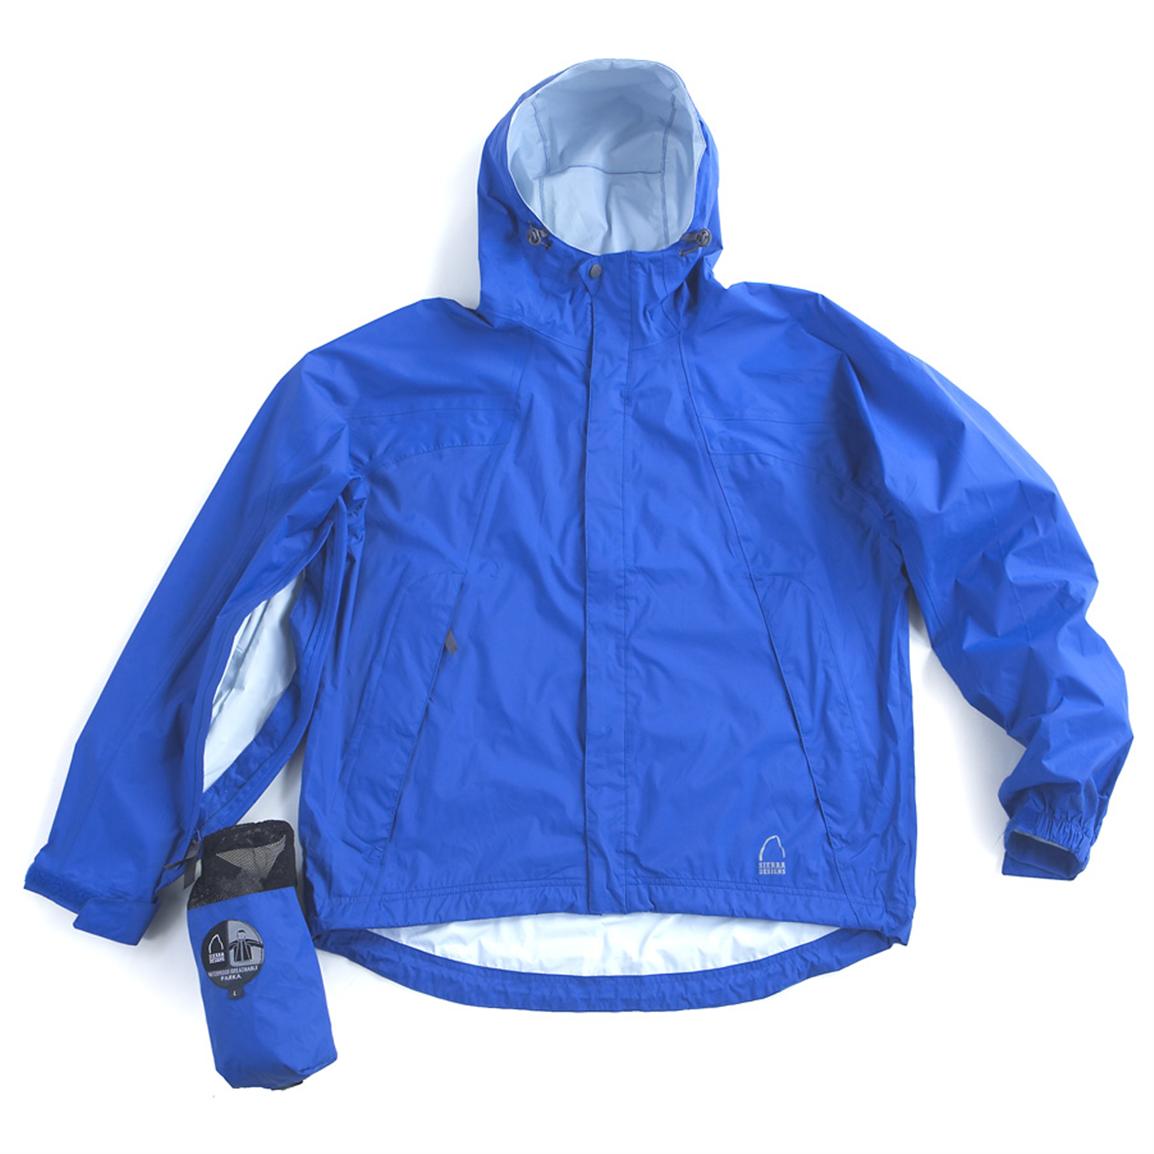 Sierra Designs® Hurricane Waterproof Jacket, Royal Blue - 171845, Rain ...